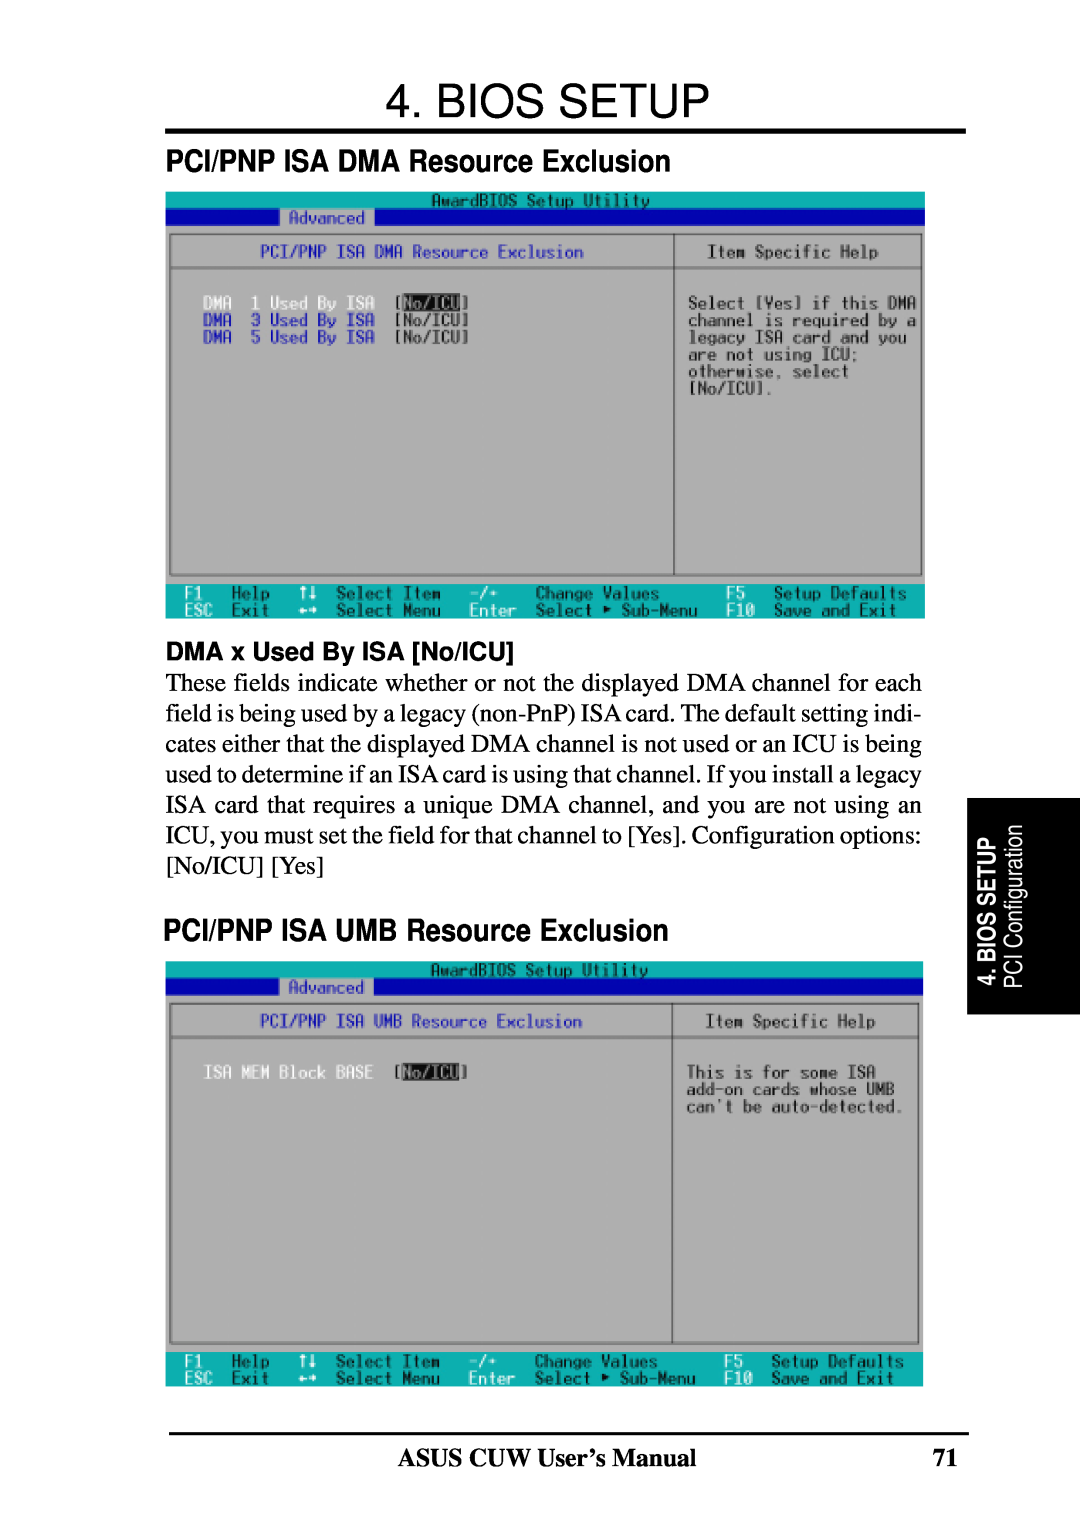 Asus 810 PCI/PNP ISA DMA Resource Exclusion, PCI/PNP ISA UMB Resource Exclusion, DMA x Used By ISA No/ICU, Bios Setup 